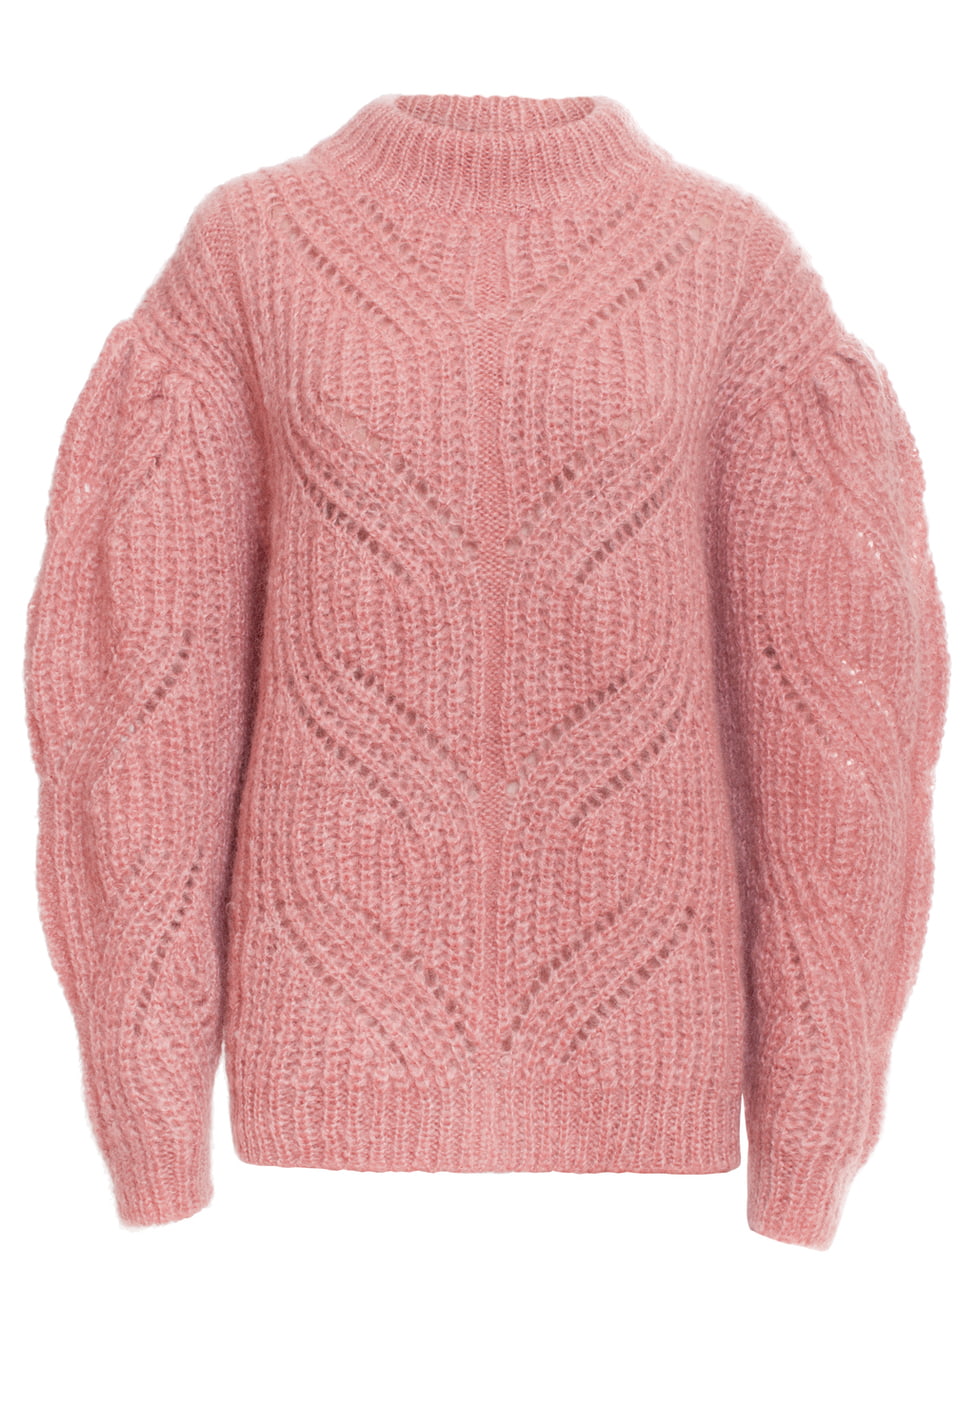 Różowy sweter Bizuu - 999 zł